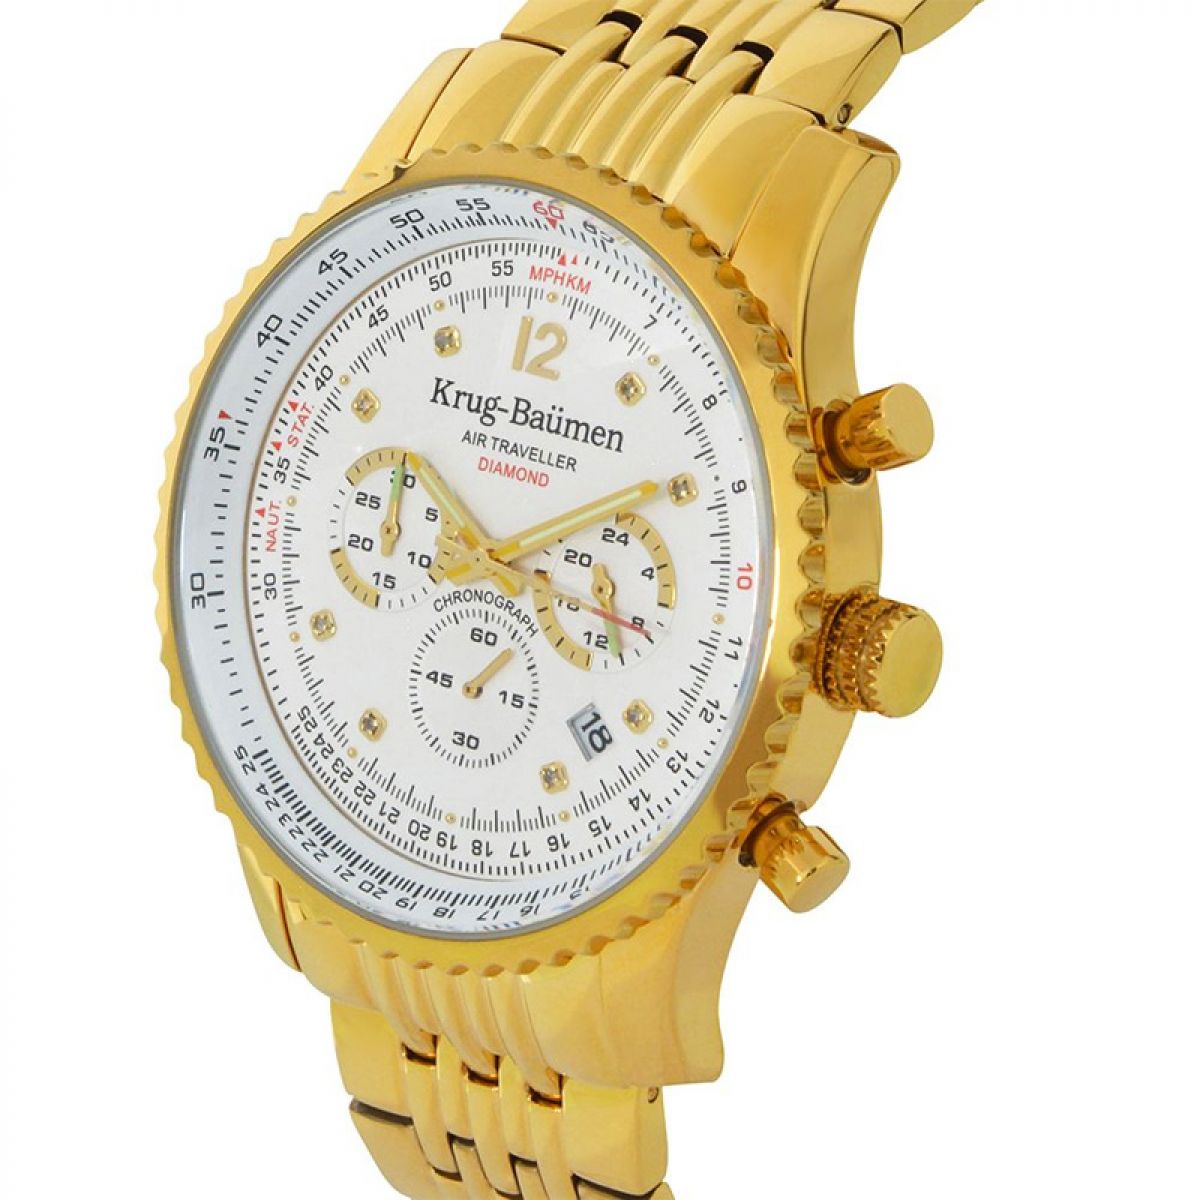 Krug Baümen 610101DS Air Traveller Diamond 46mm Horloge Heren